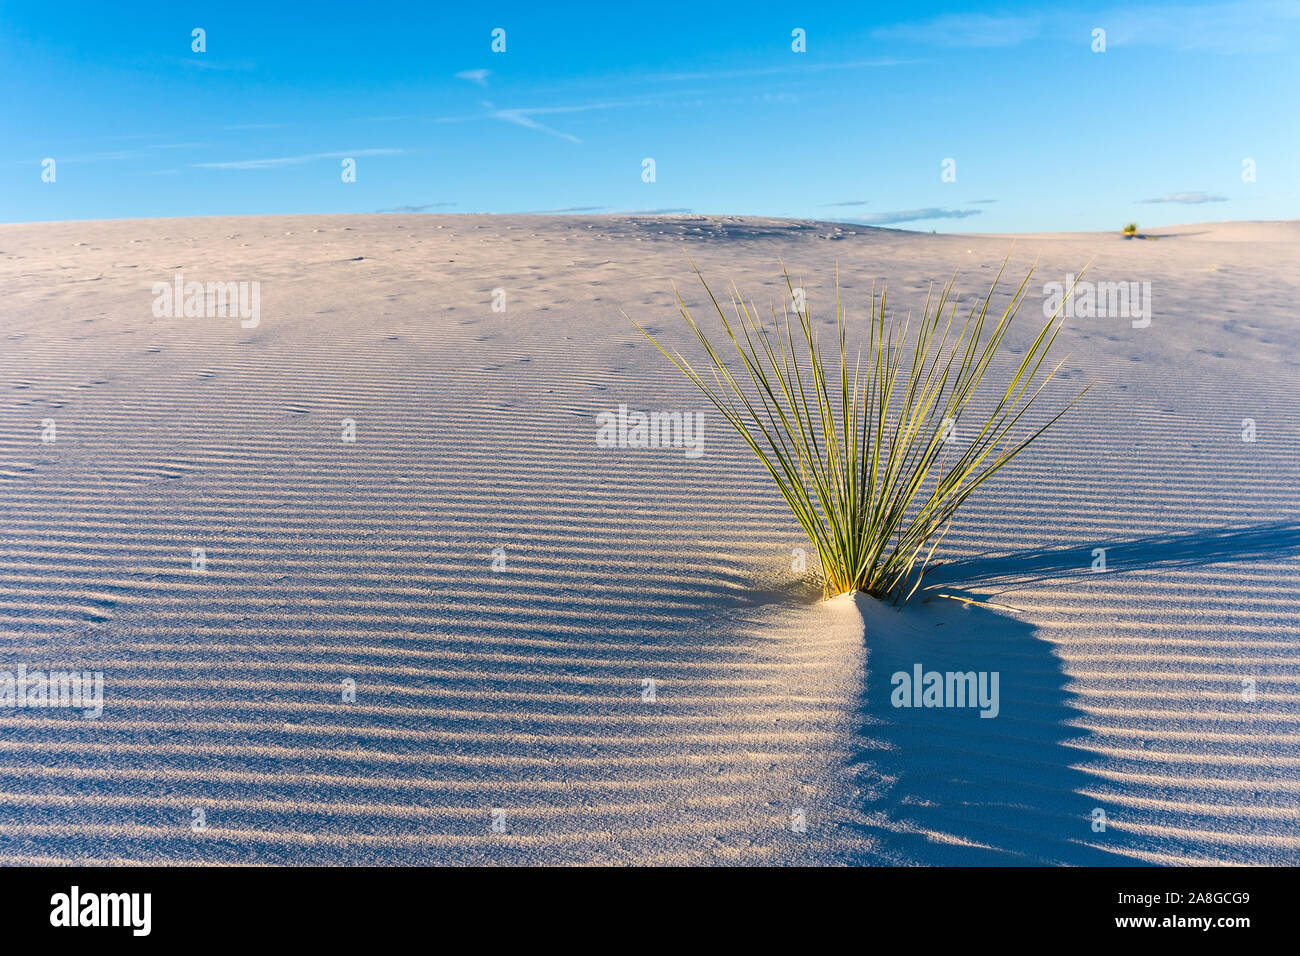 Une plante solitaire entourée de sable de gypse ondule sur une dune dans le parc national de White Sands, Nouveau-Mexique, États-Unis Banque D'Images